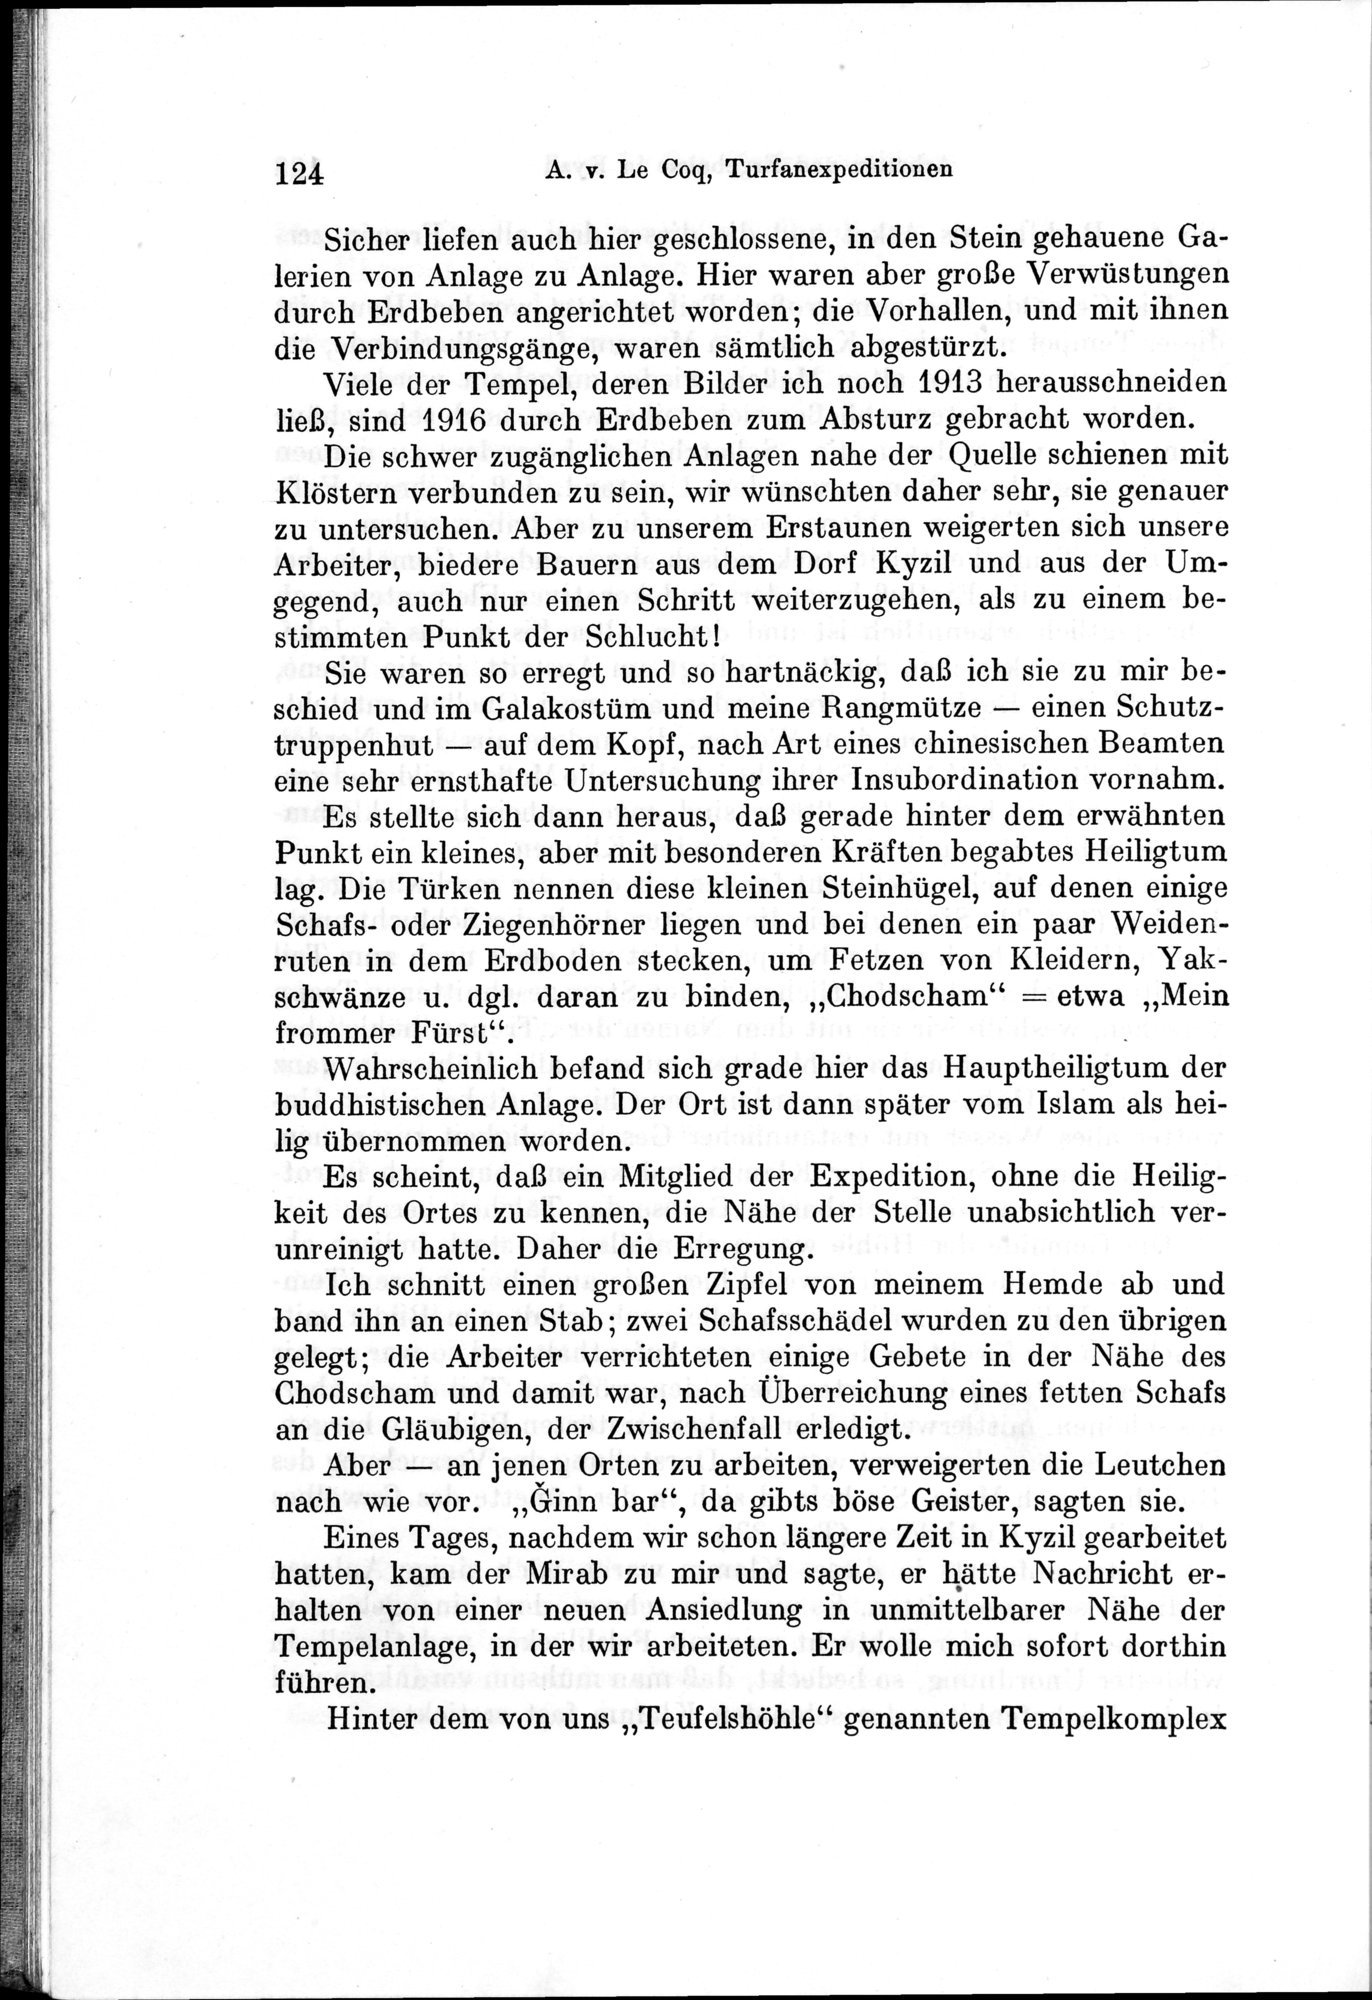 Auf Hellas Spuren in Ostturkistan : vol.1 / Page 180 (Grayscale High Resolution Image)